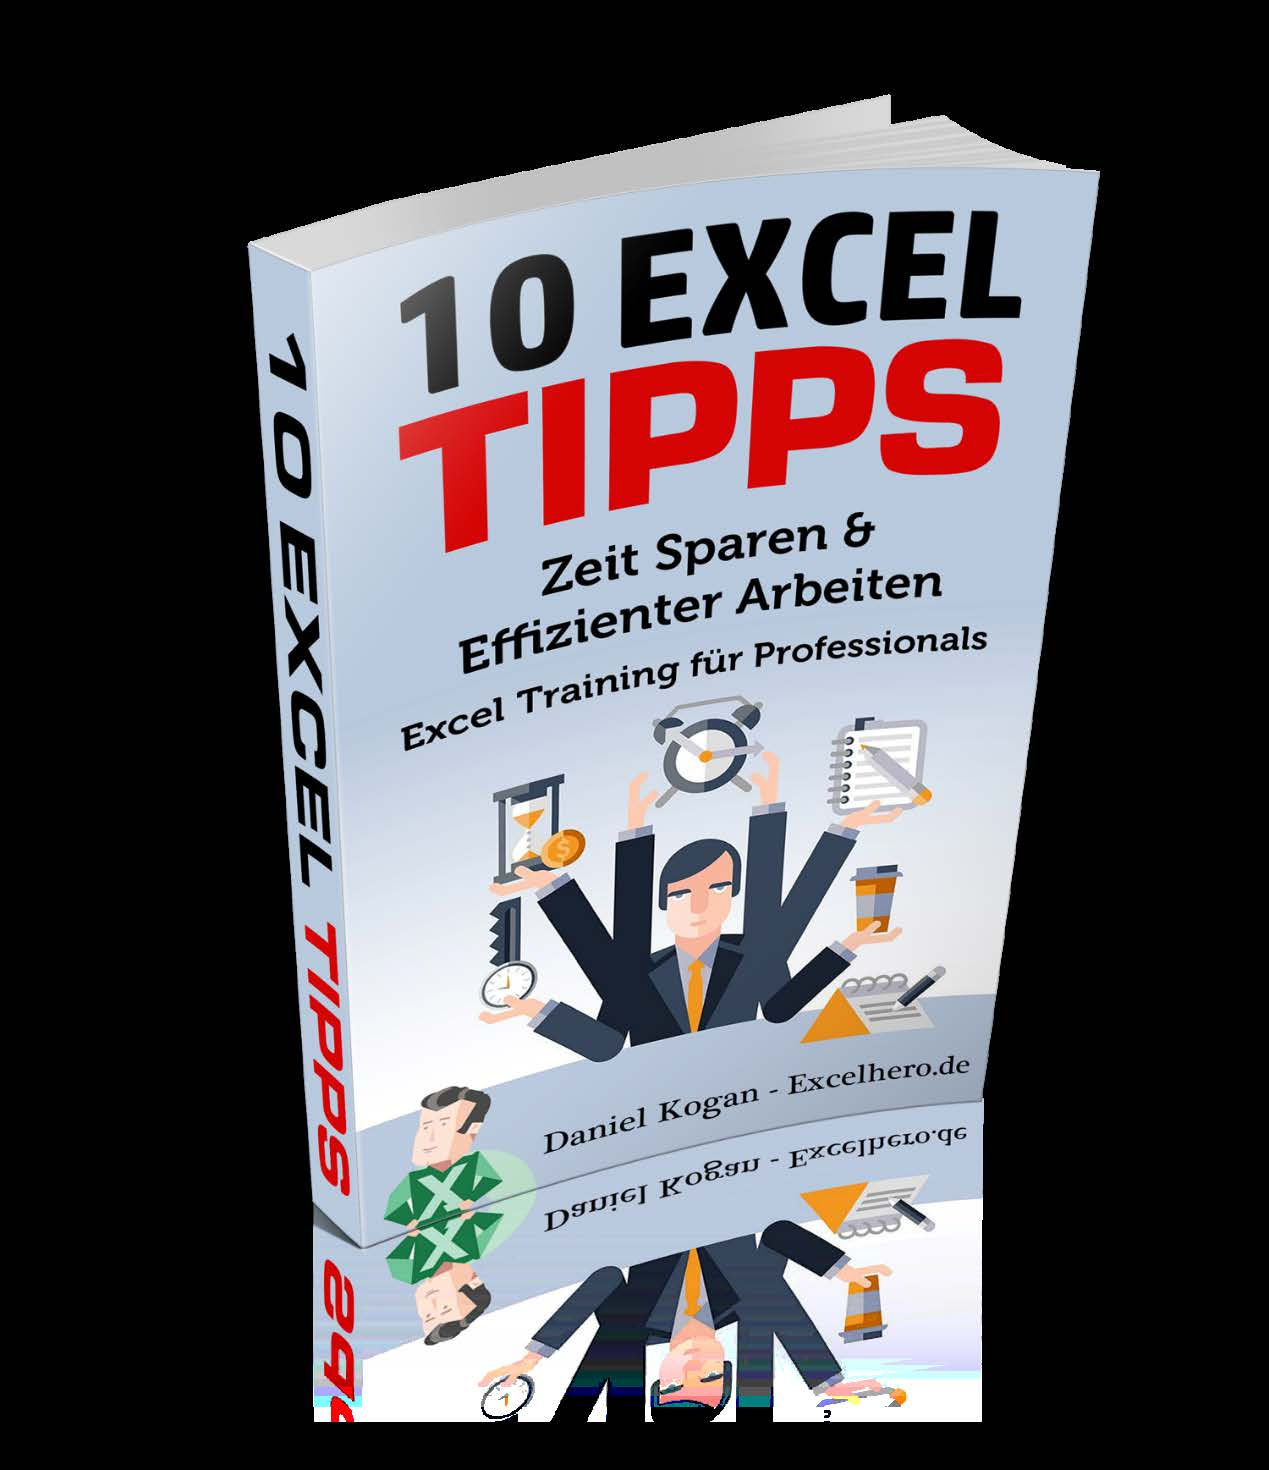 10 Excel Tipps Zeit